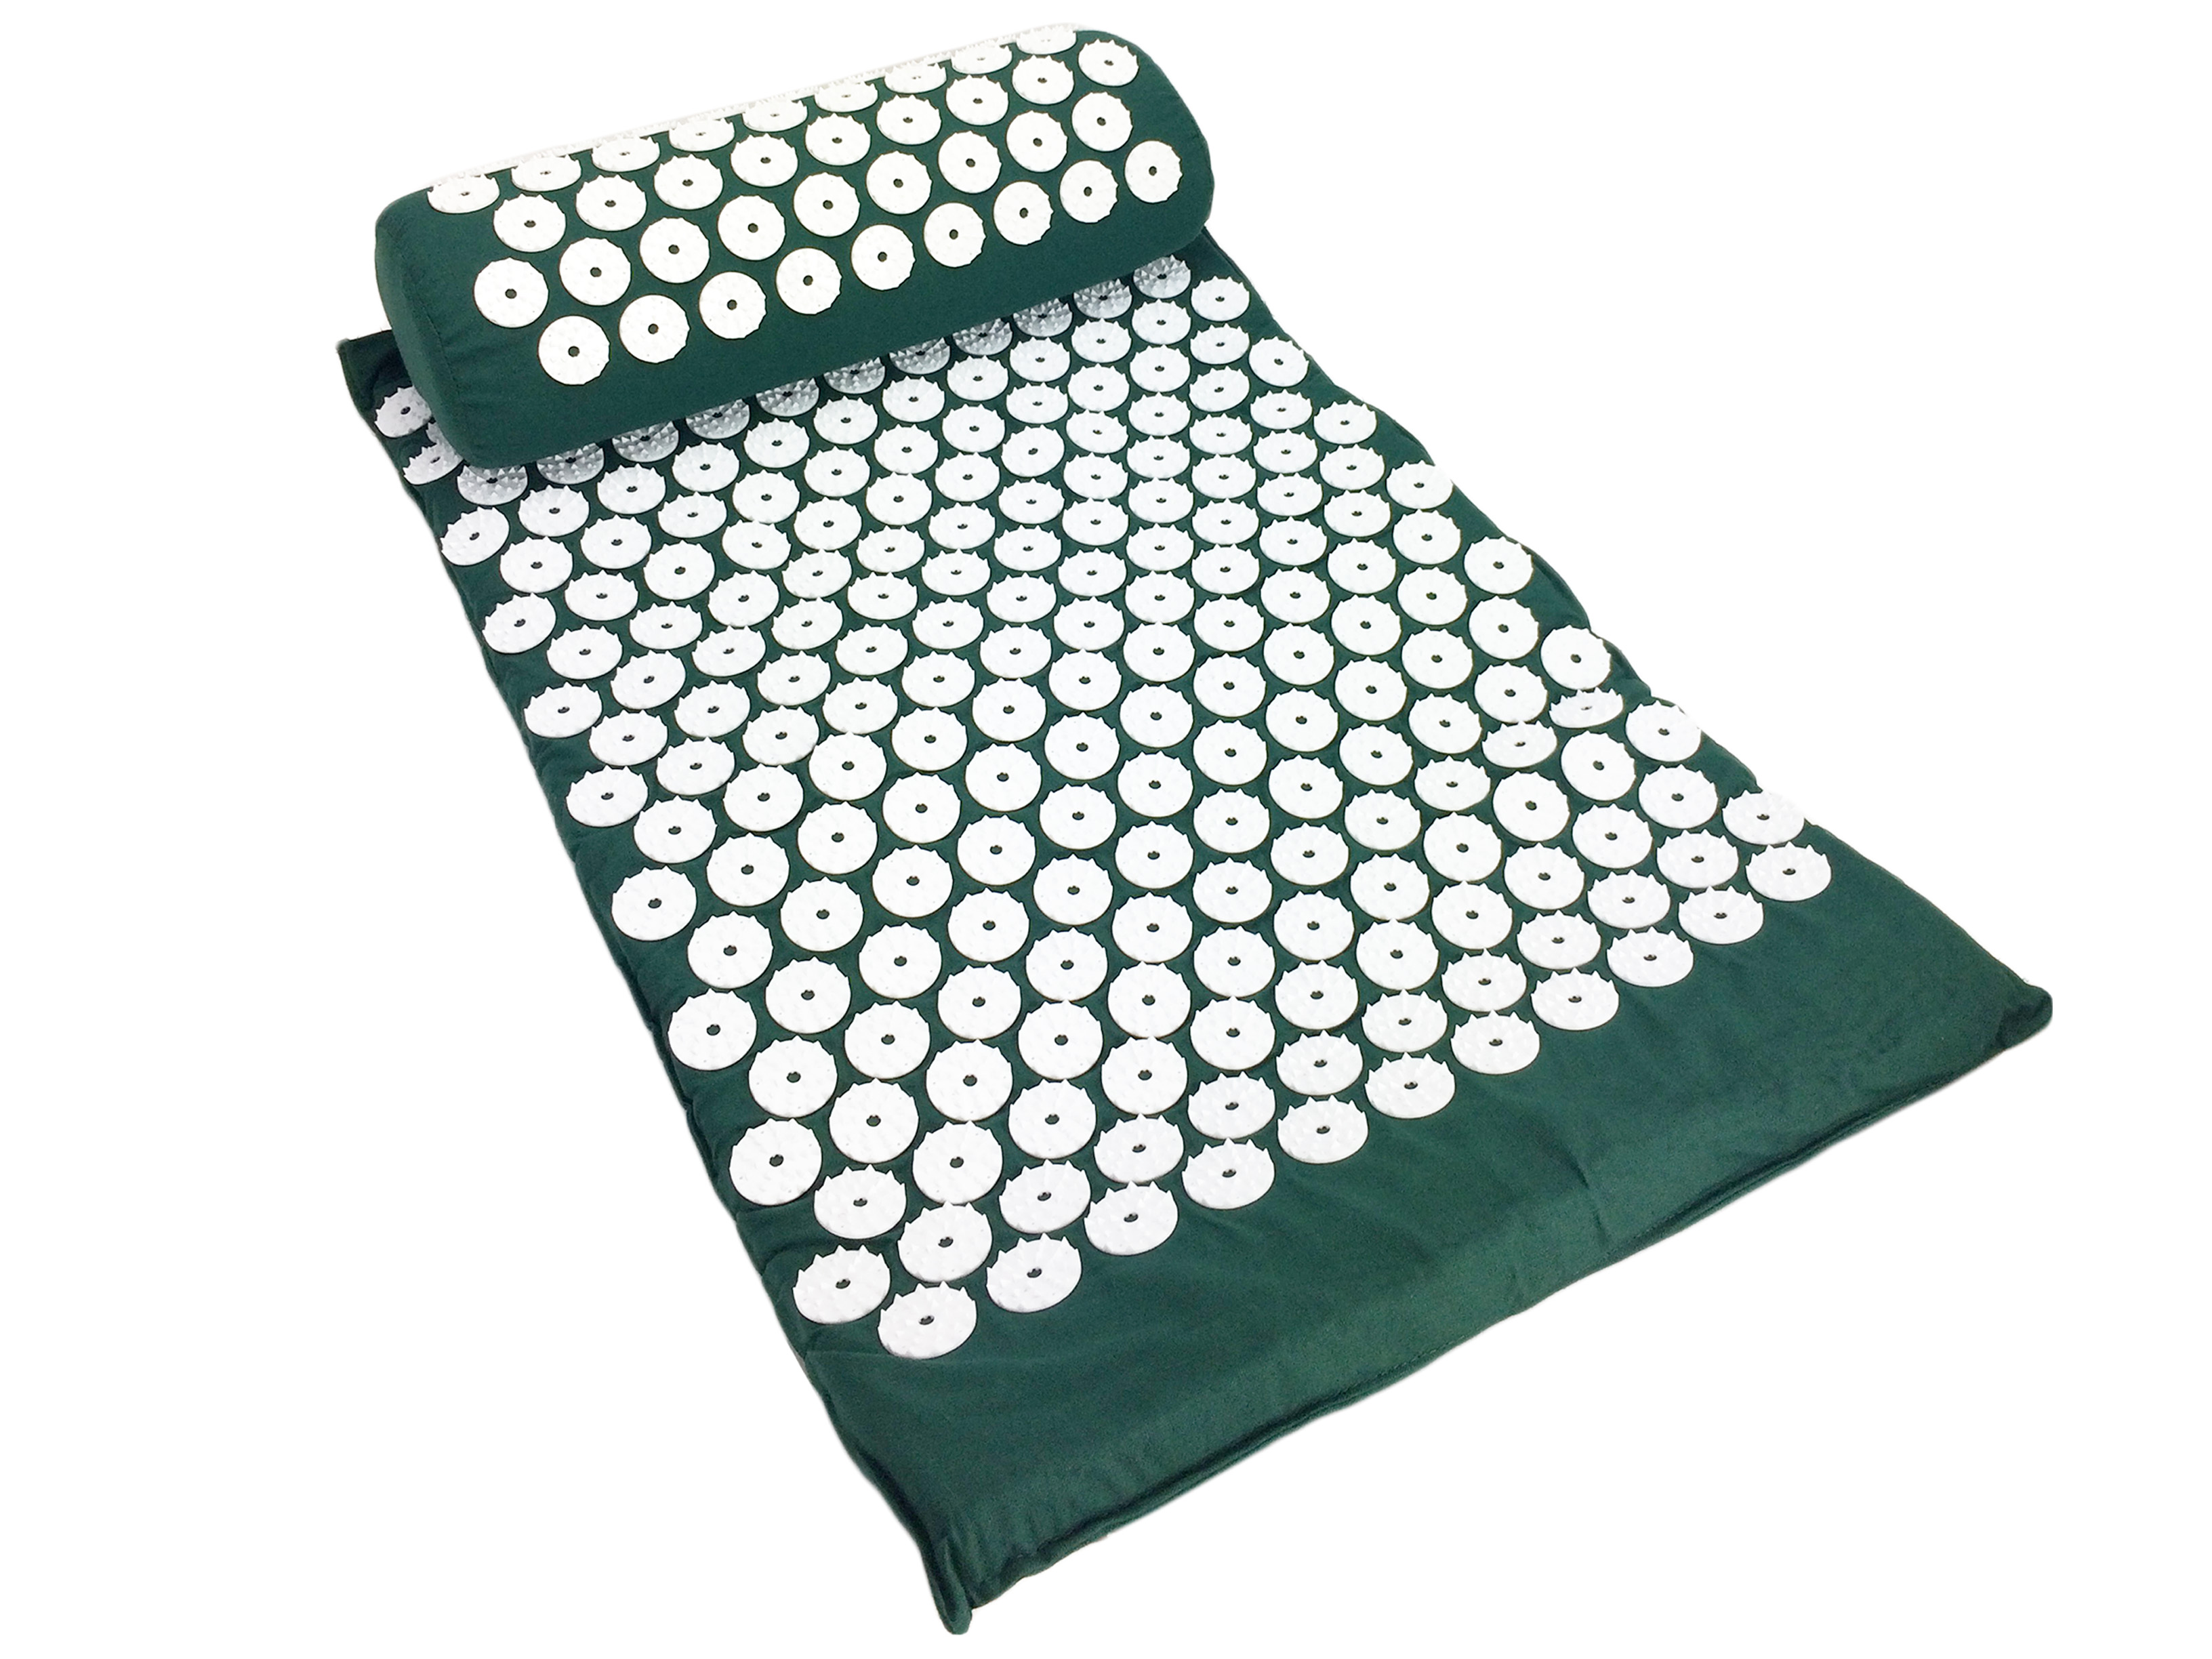 Акупунктурный массажный комплект из коврика и валика Acupressure Mat оптом - Фото №4